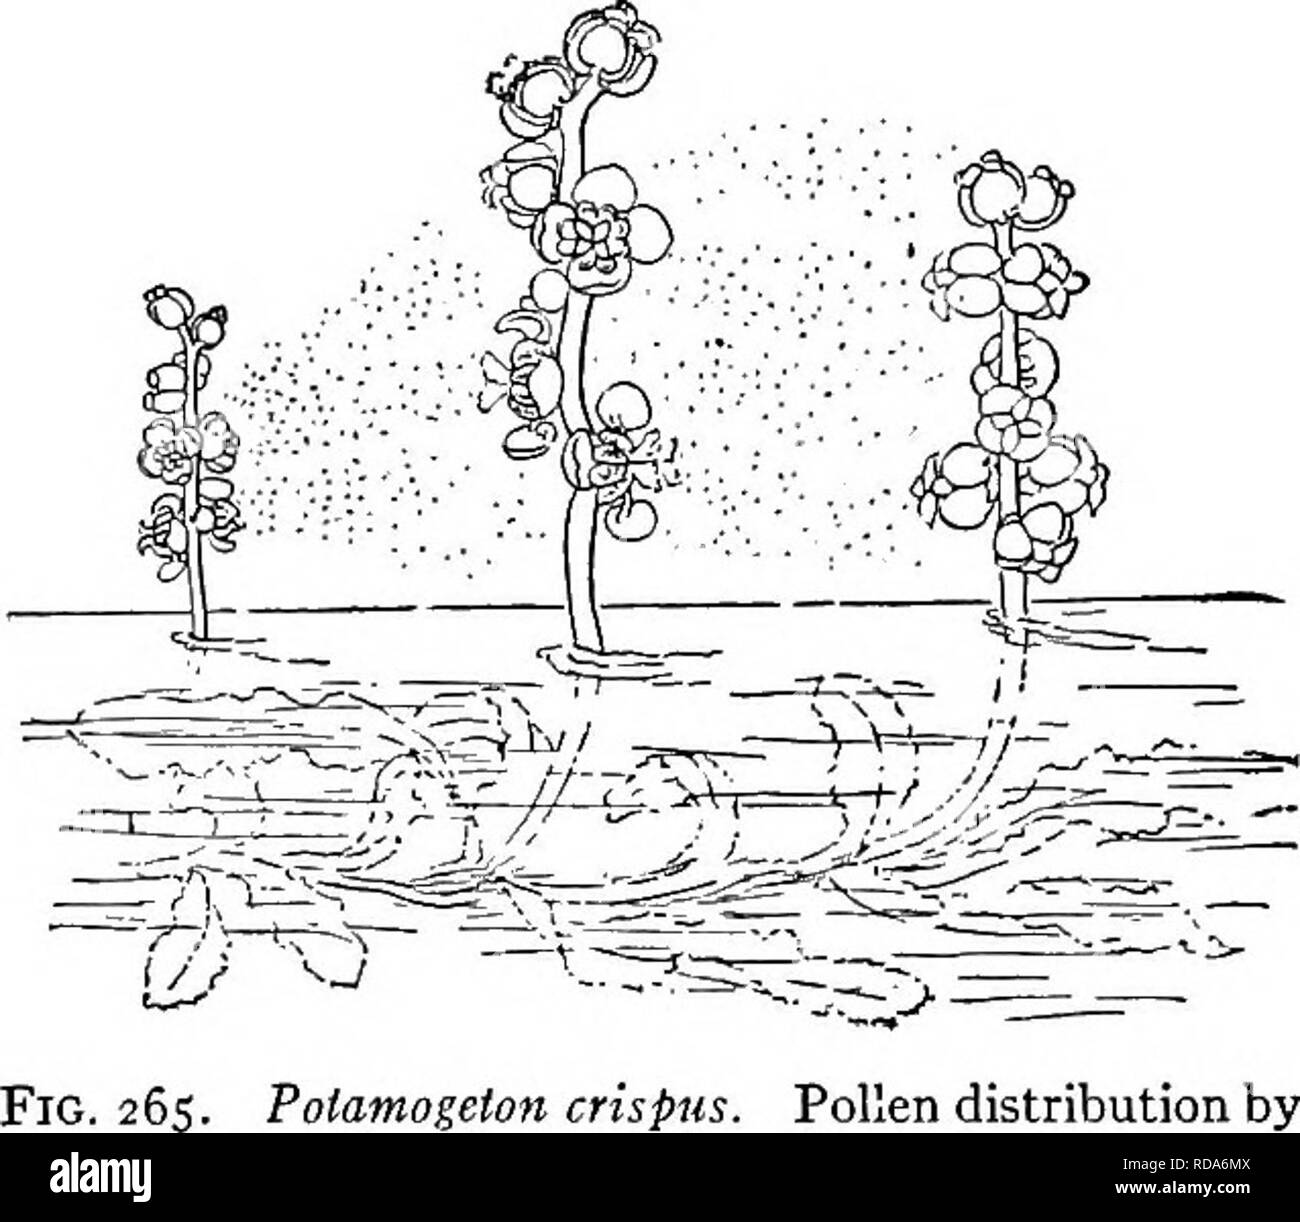 . La biologie d'eau douce. Biologie des eaux douces. L'ENSEMBLE DE LA VÉGÉTATION AQUATIQUE à partir de 189 la fleur-vitre pour servir de corps flottants. Qu'il y a d'espèces terrestres de l'Utricularia qui ont aussi des vessies, il semble fort probable que l'formes aquatiques ont été obtenues à partir des espèces terrestres. Certains auteurs ont suggéré que, étant sans racines et re- quiring azotés plus de nourriture qu'il peut être obtenu à partir de la sub- stances en solution dans l'eau, ces ours ont été mis en place pour assurer l'alimentation des animaux. Il est tout aussi probable que les formes aquatiques sont simplement en utilisant des structures qui sont caractéristiques de leur a Banque D'Images